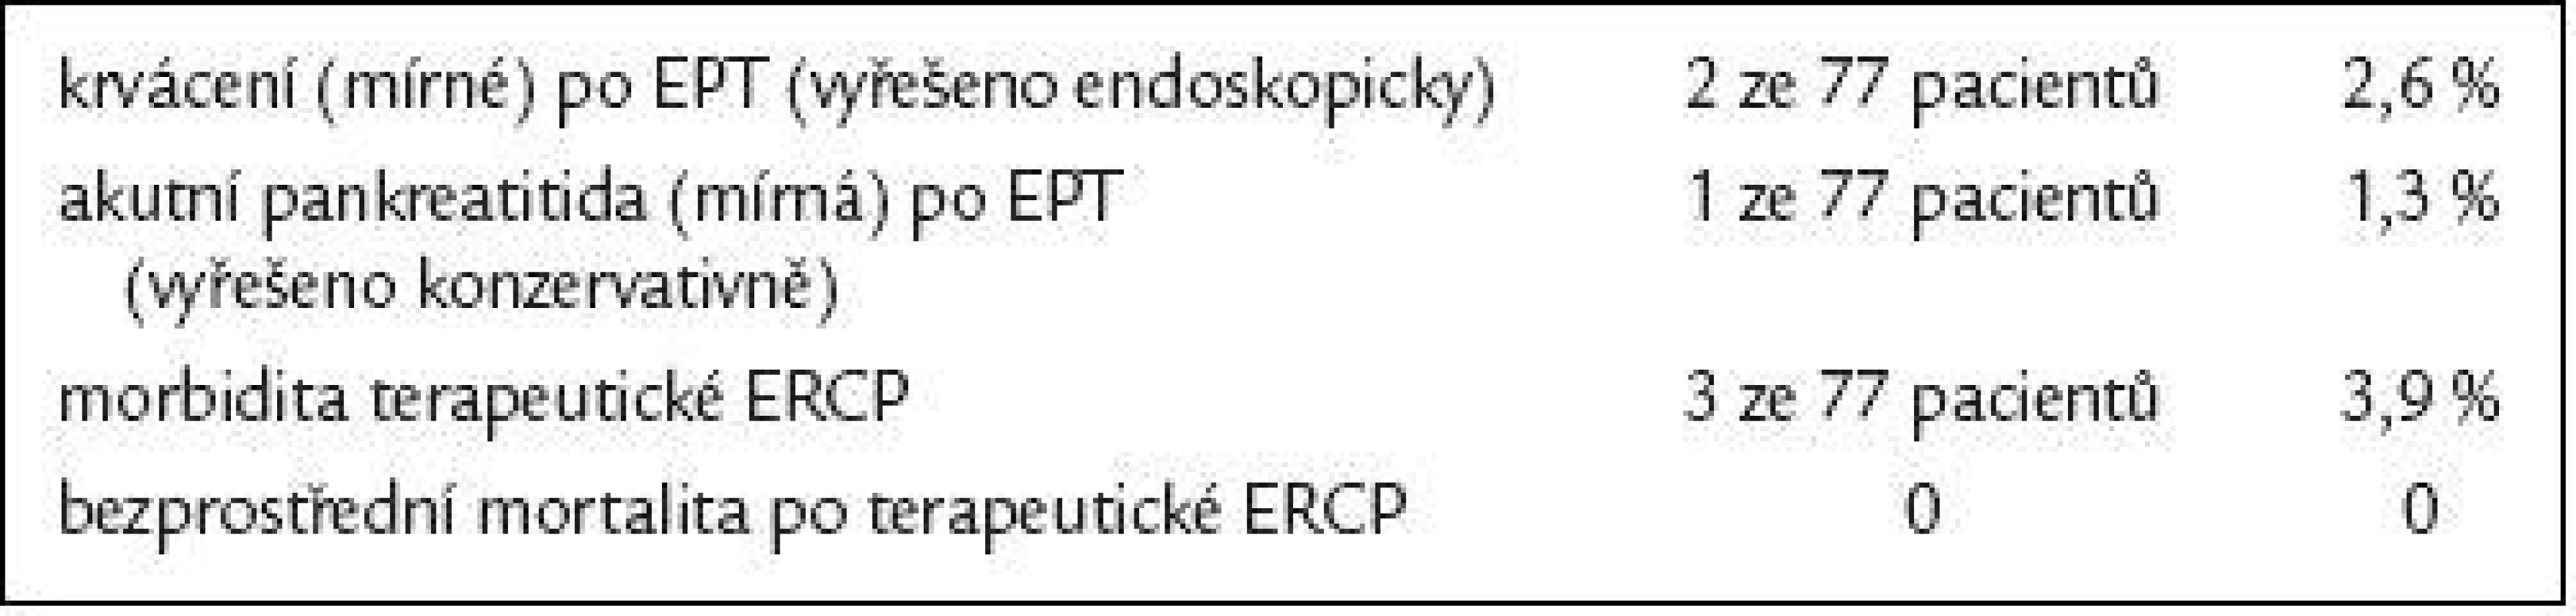 Morbidita a bezprostřední mortalita terapeutické ERCP u 77 pacientů, kteří prodělali endoskopickou léčbu.